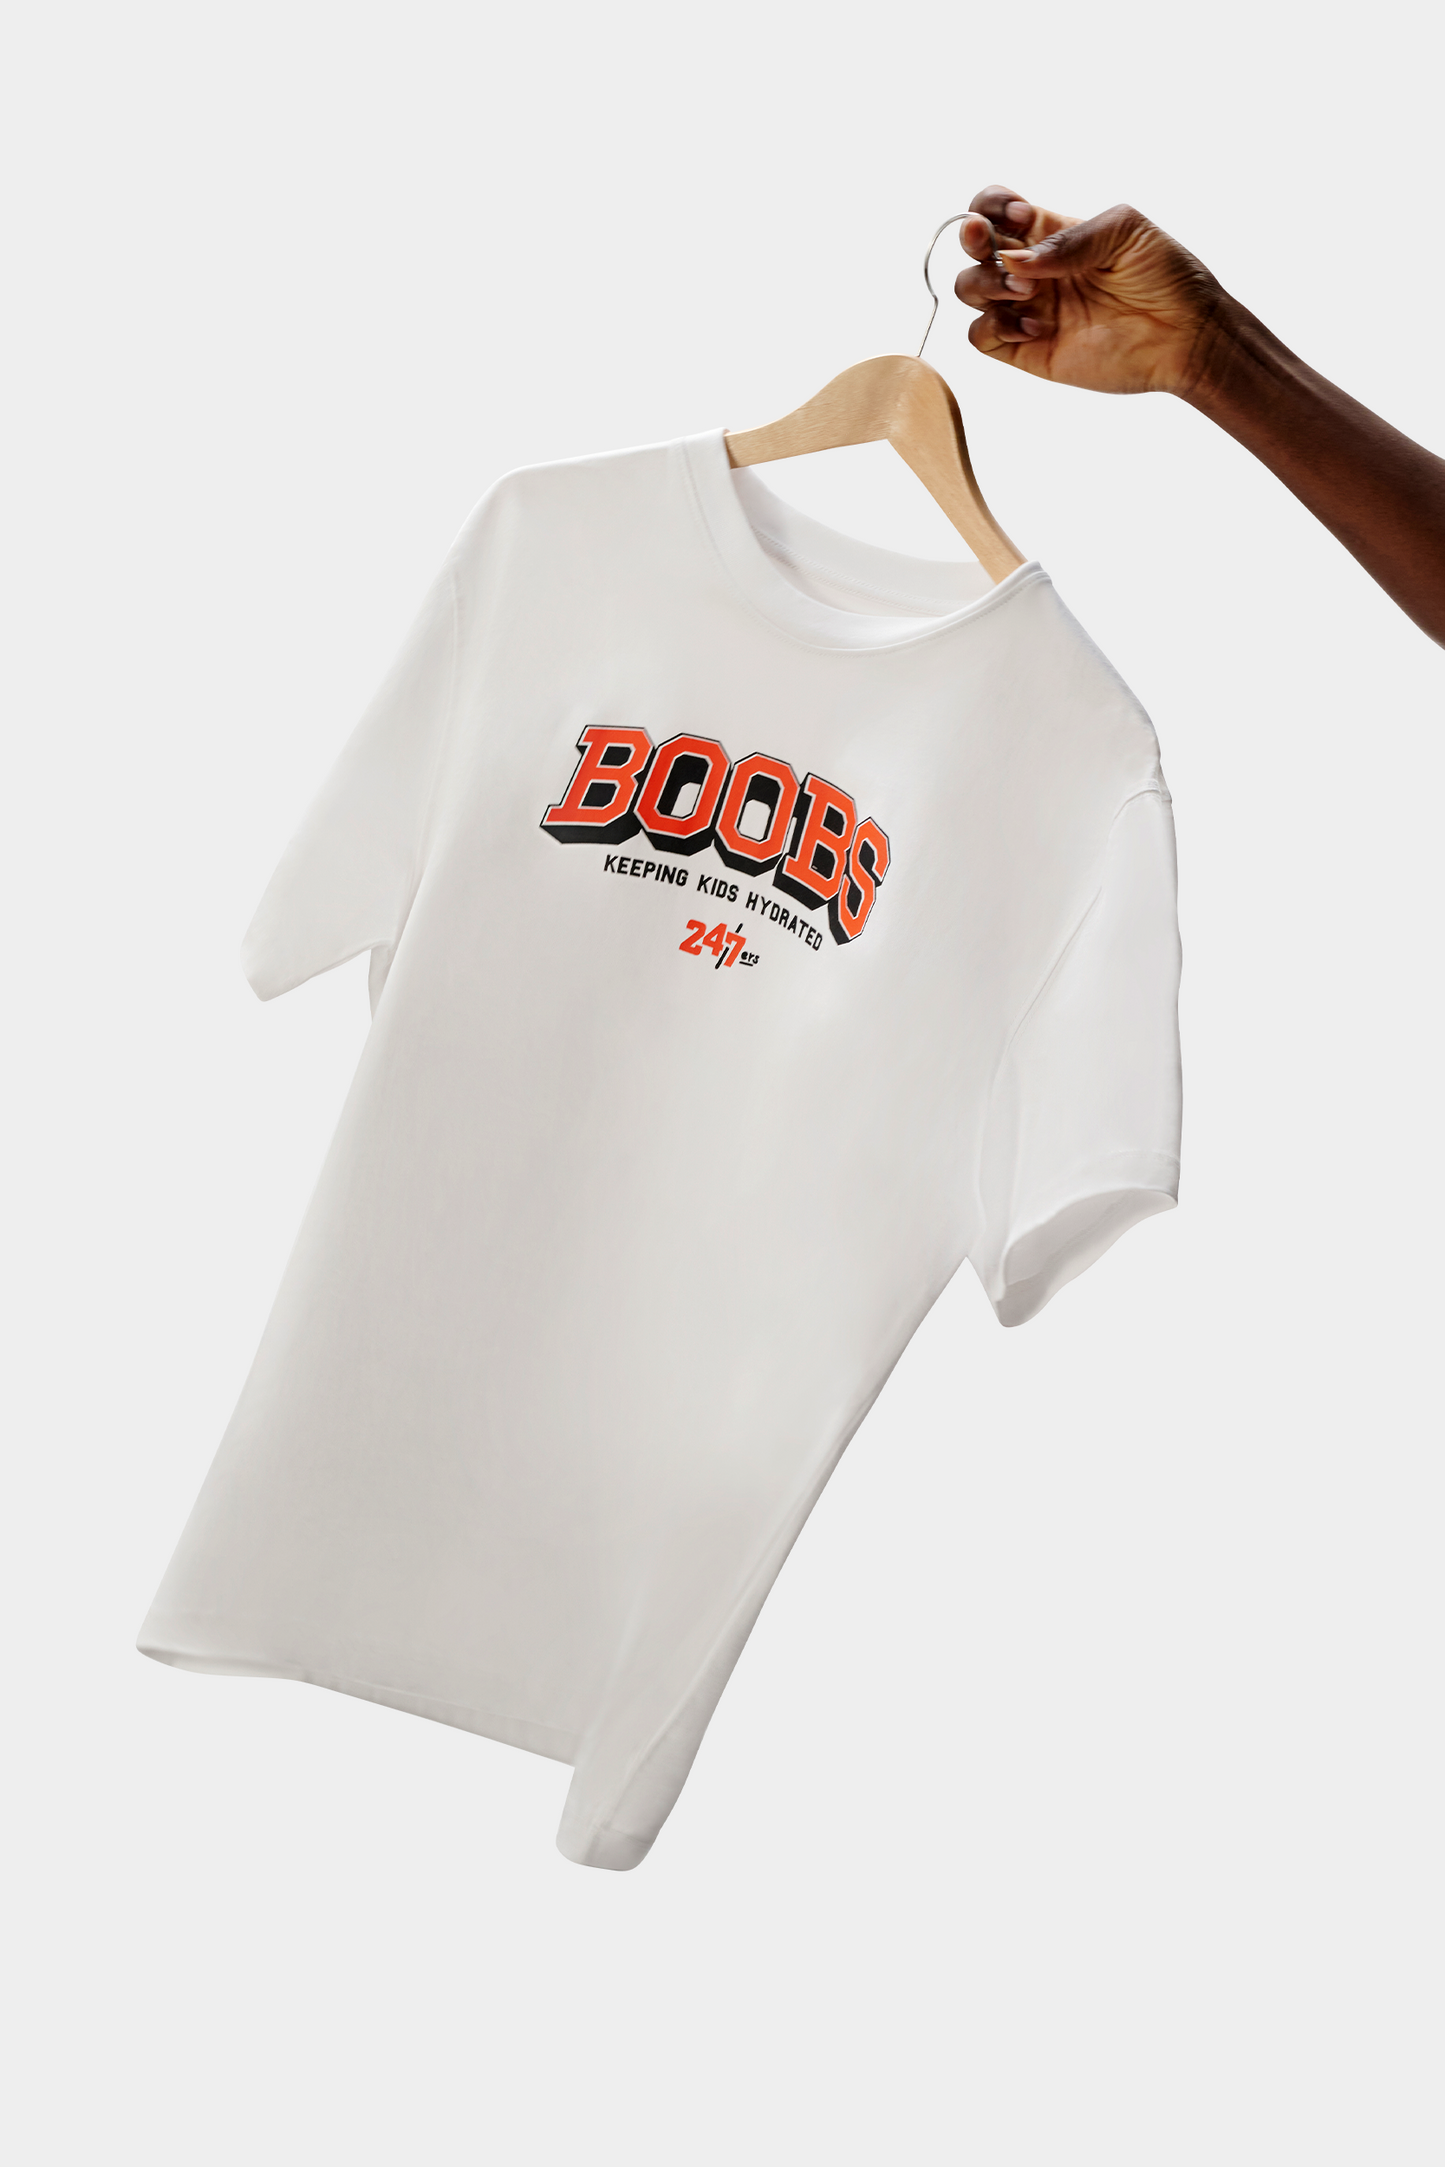 Shirt 24/7ers »Boobs«